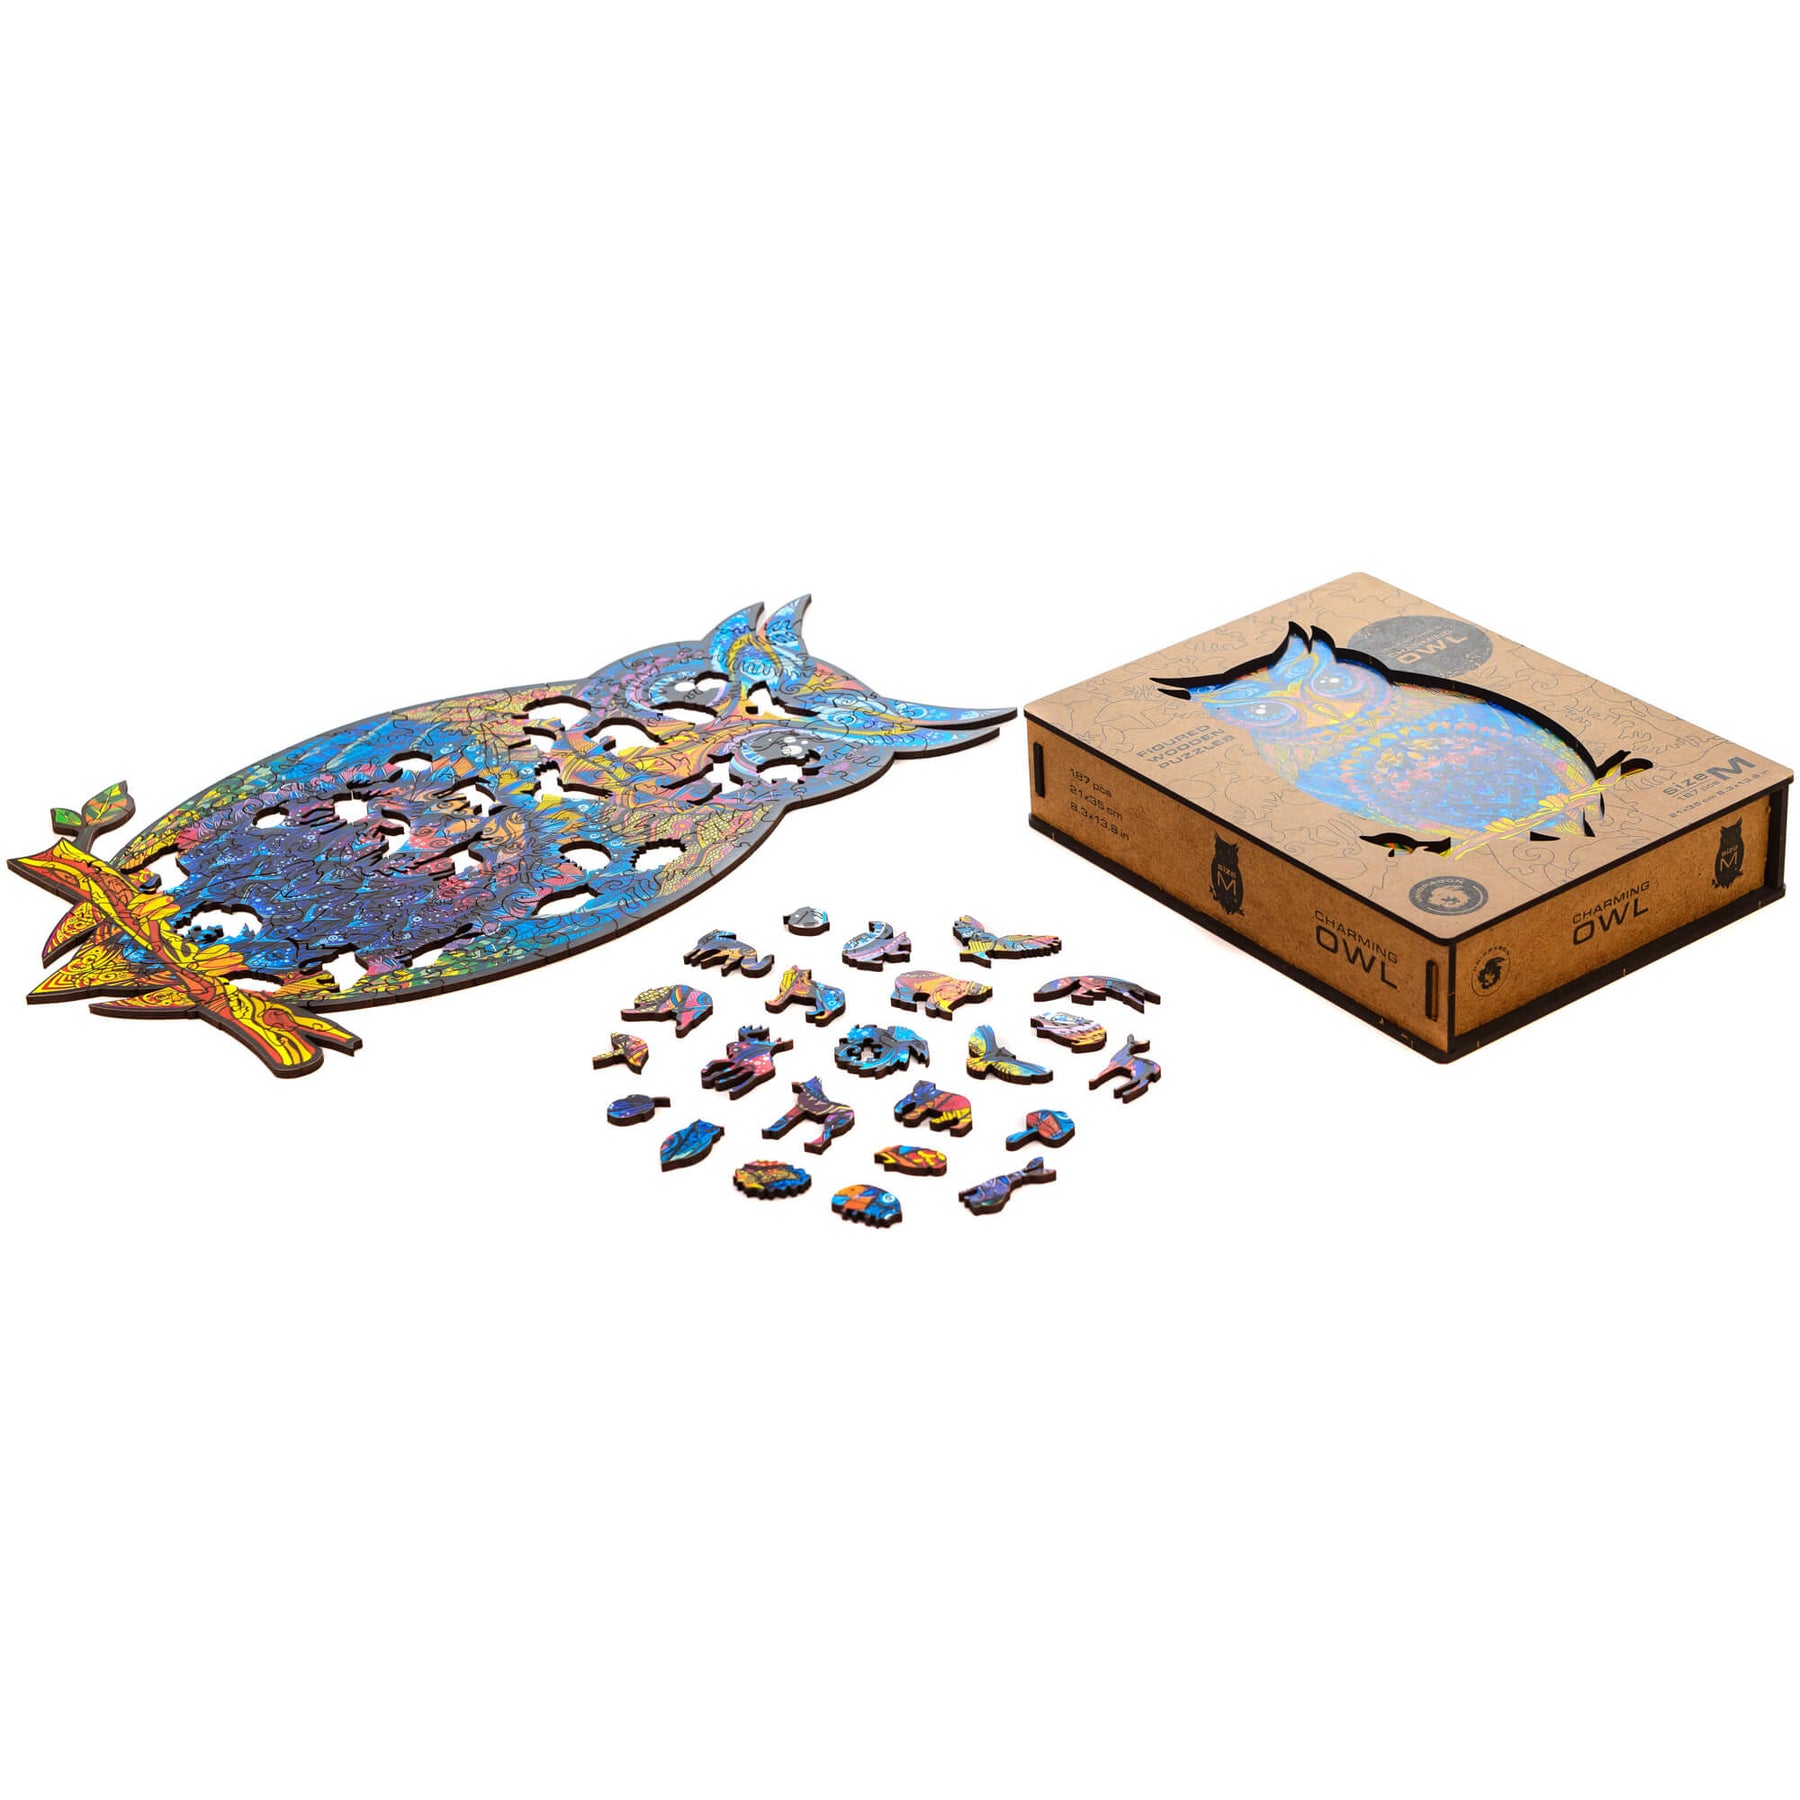 Gracieux puzzle en bois de hibou-Unidragon--